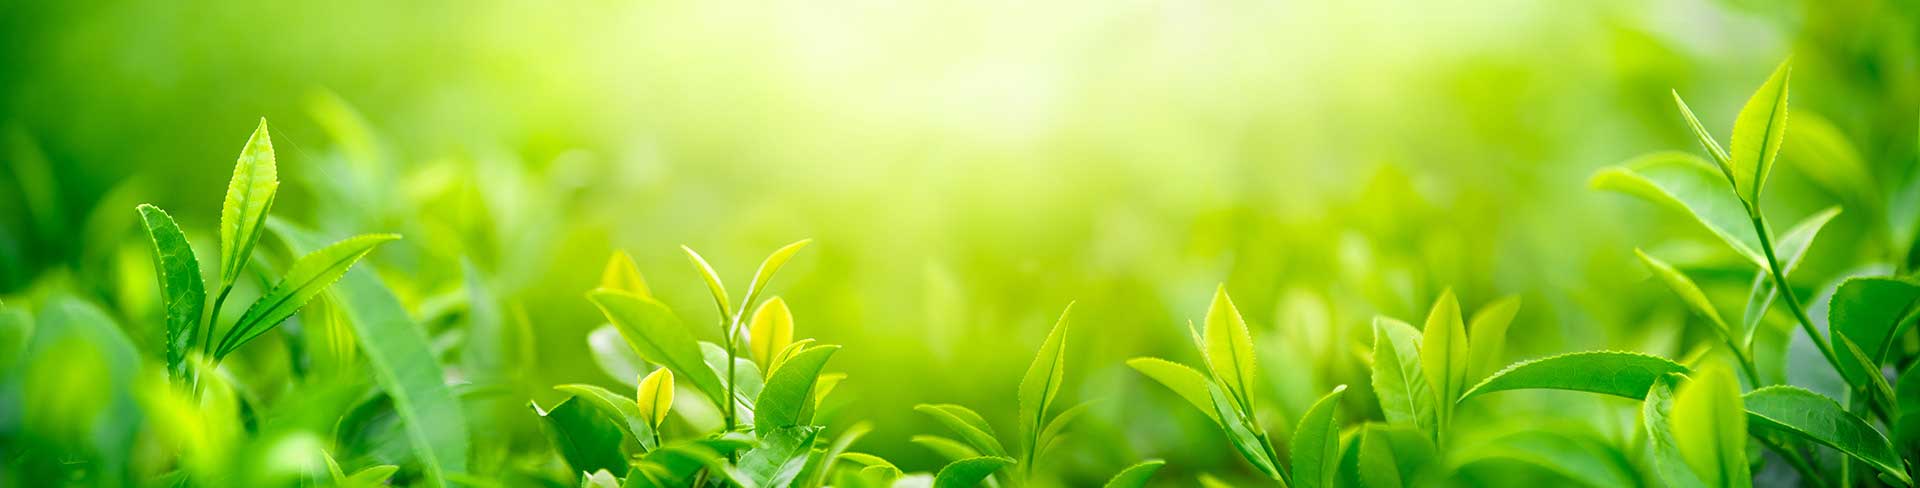 Grüne Pflanzen, soll eine ruhige und kostenfreie Arbeitsvermittlung symbolisieren.